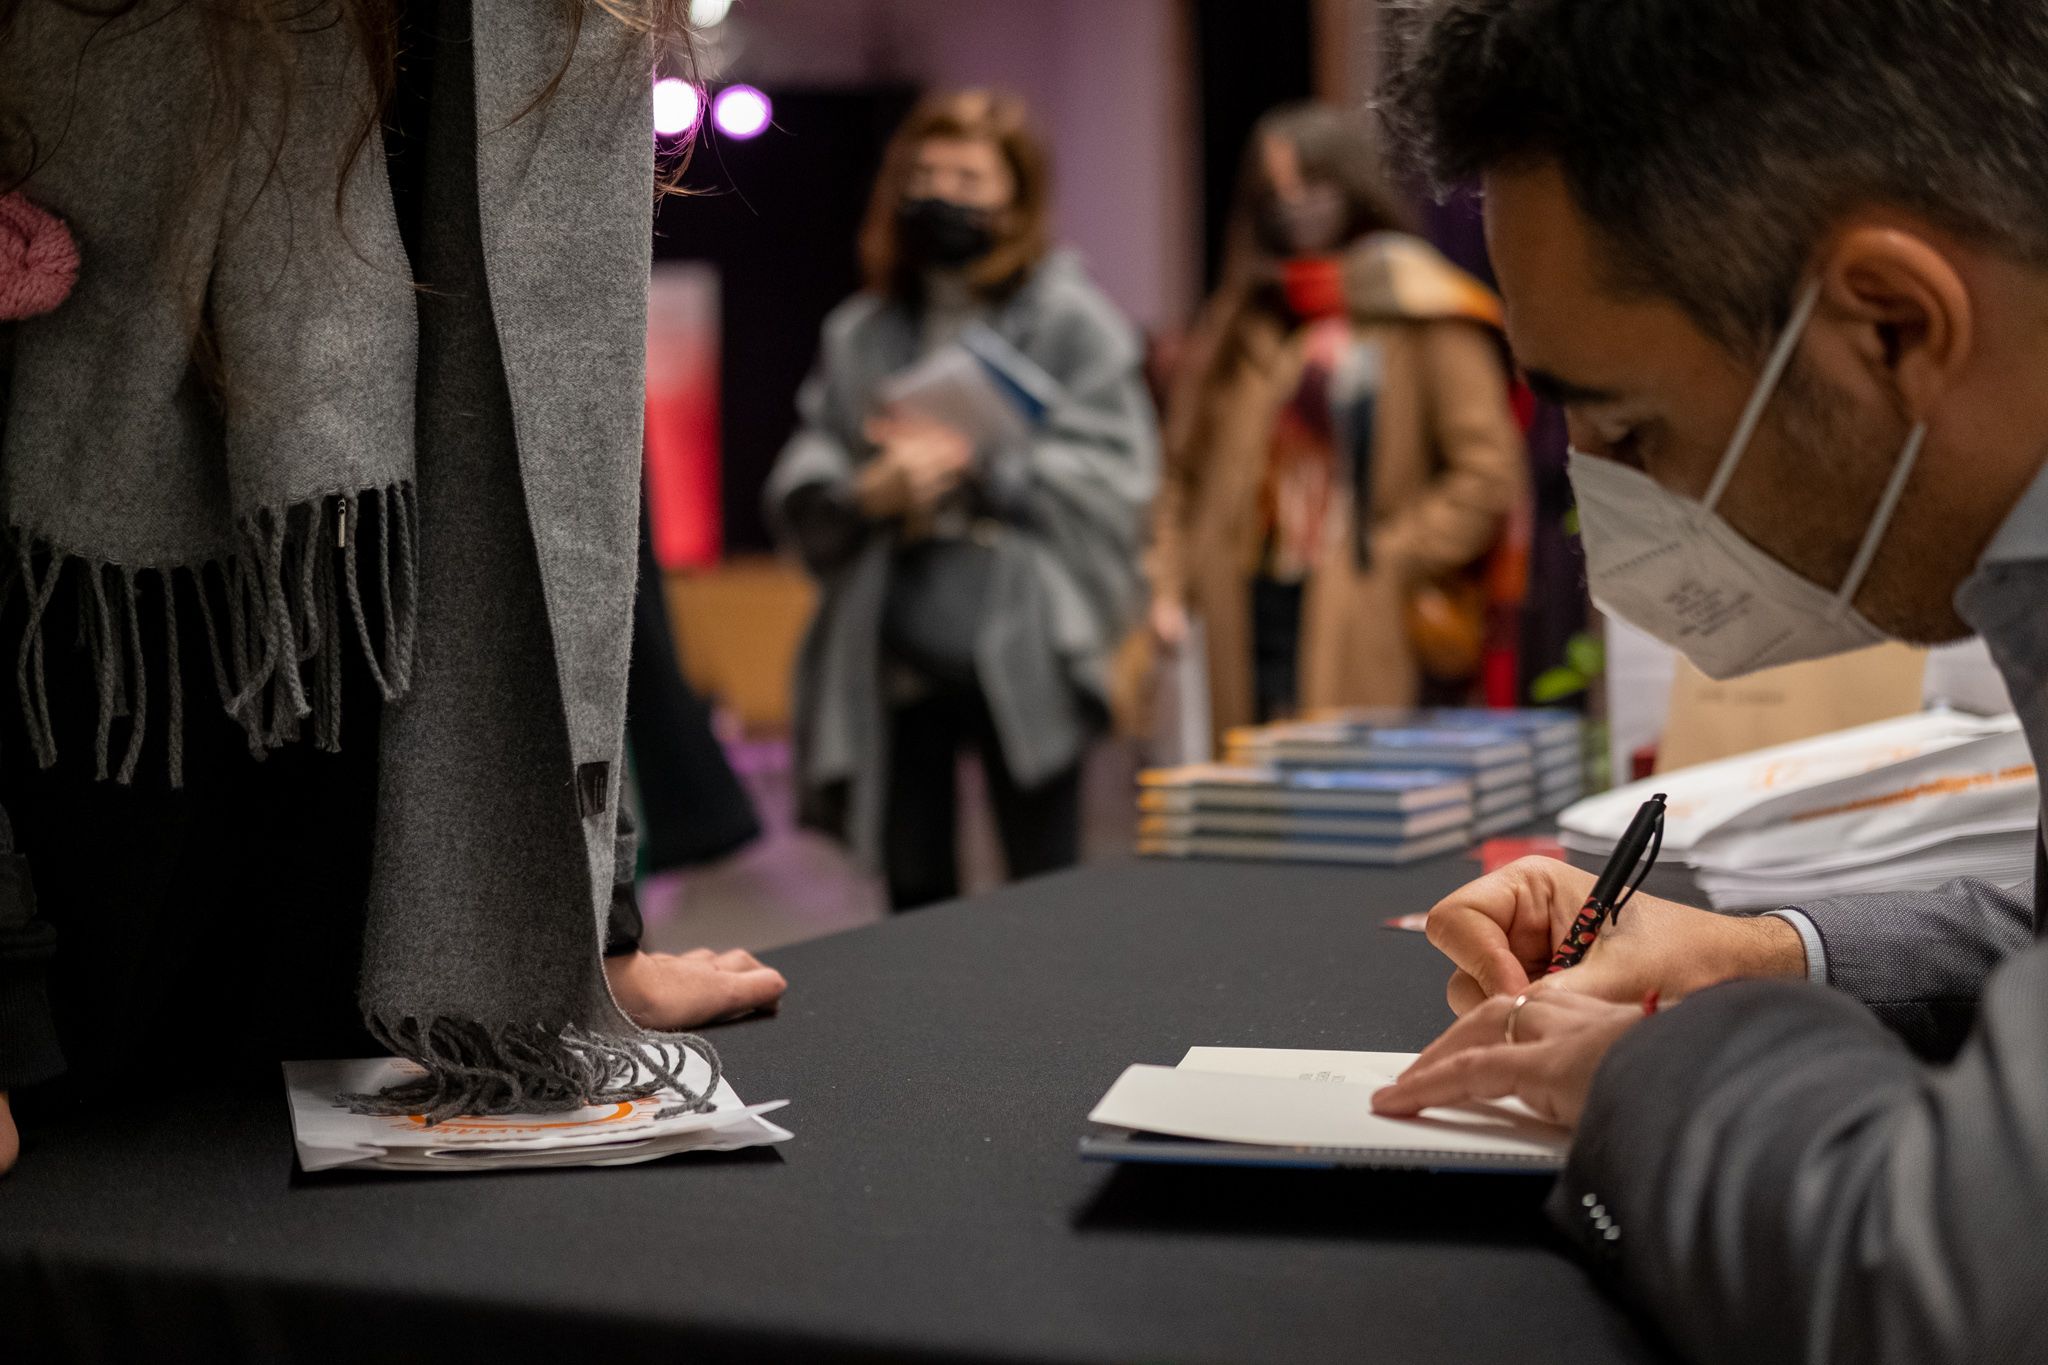 Jofre Llombart signa el llibre als lectors. FOTO: Ale Gómez